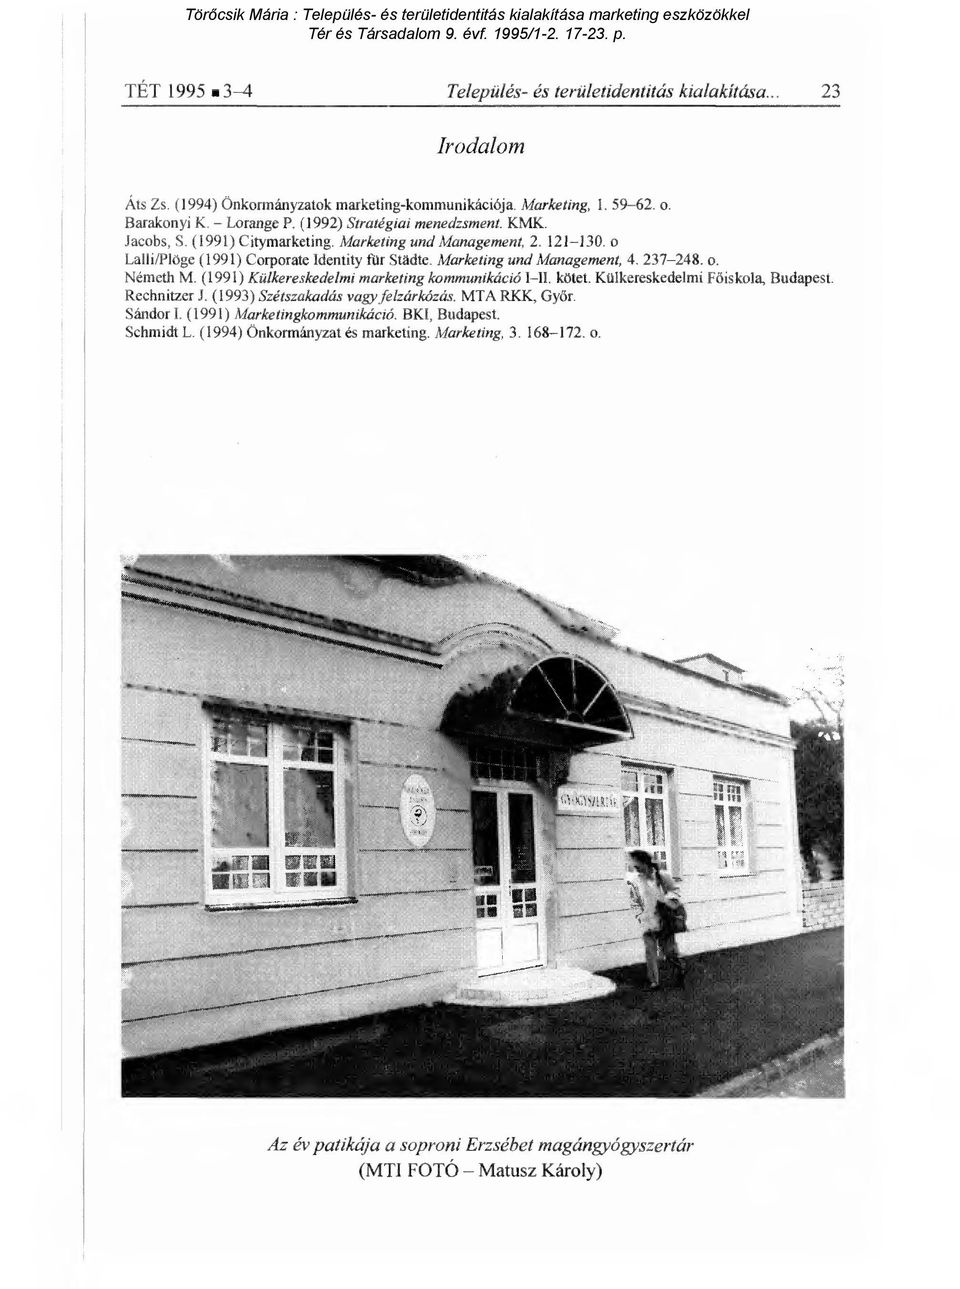 Marketing und Management, 4. 237-248. o. Németh M. (1991) Külkereskedelmi marketing kommunikáció I II. kötet. Külkereskedelmi F őiskola, Budapest. Rechnitzer J.